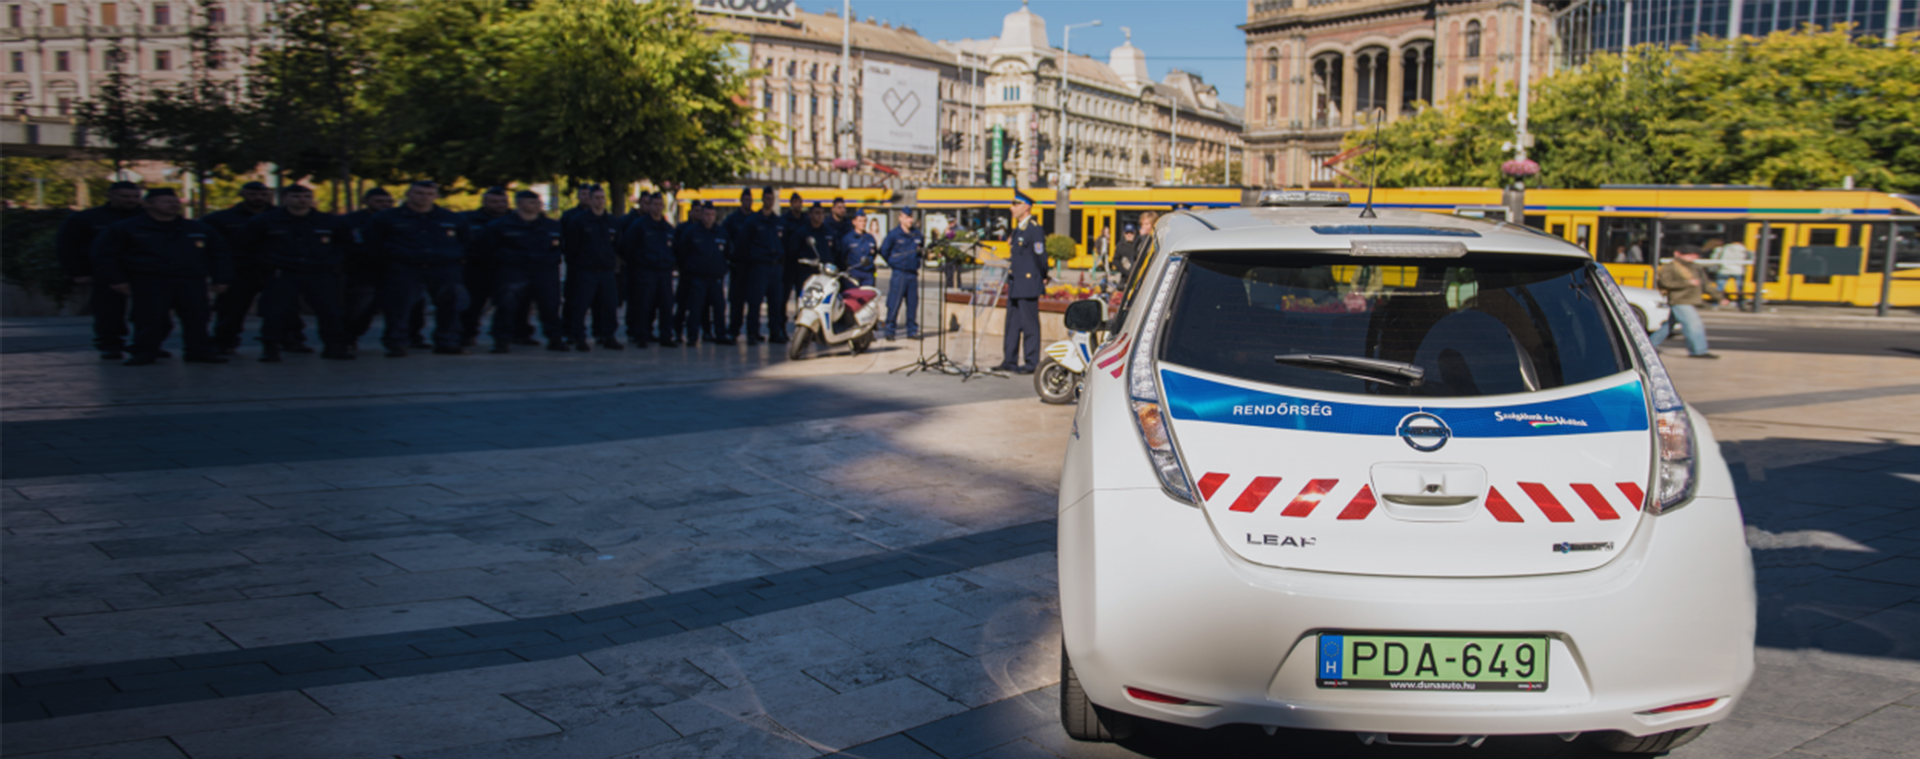 Európa egyik legnépszerűbb elektromos autóját kapták meg a terézvárosi rendőrök